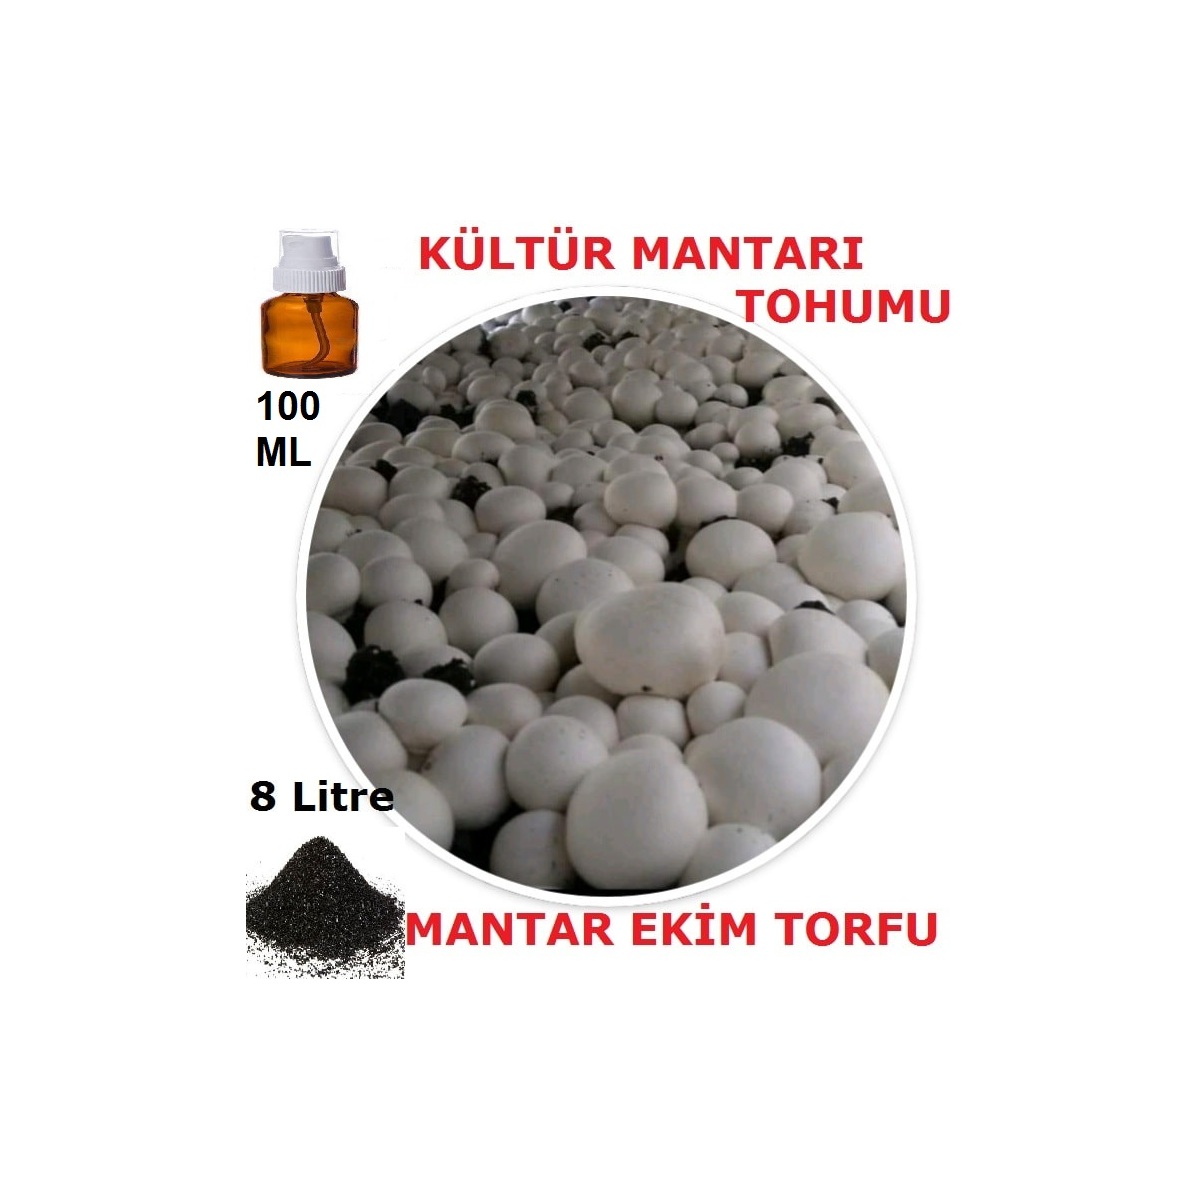 100 Ml Kültür Mantarı Tohumu + 8 Lt Mantar Ekim Torfu (Başka Bir Şeye Gerek Yok)